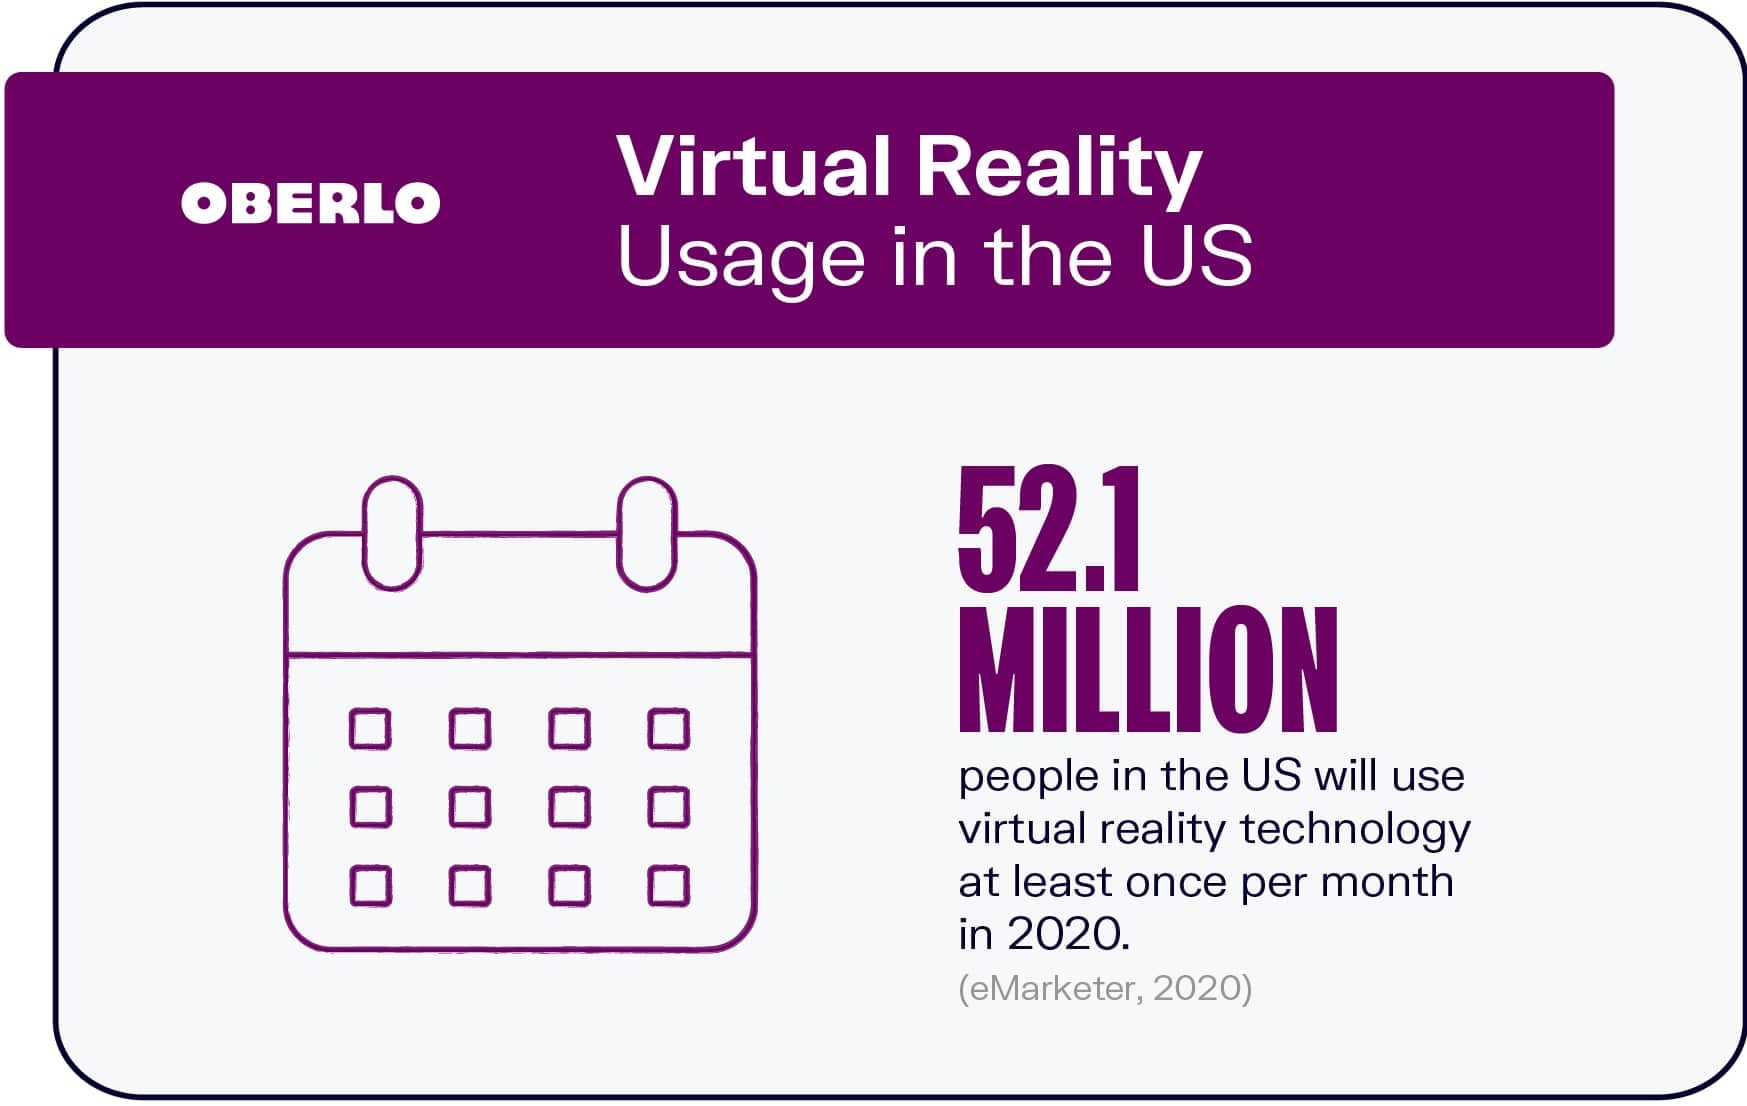 Uso de la realidad virtual en los EE. UU.